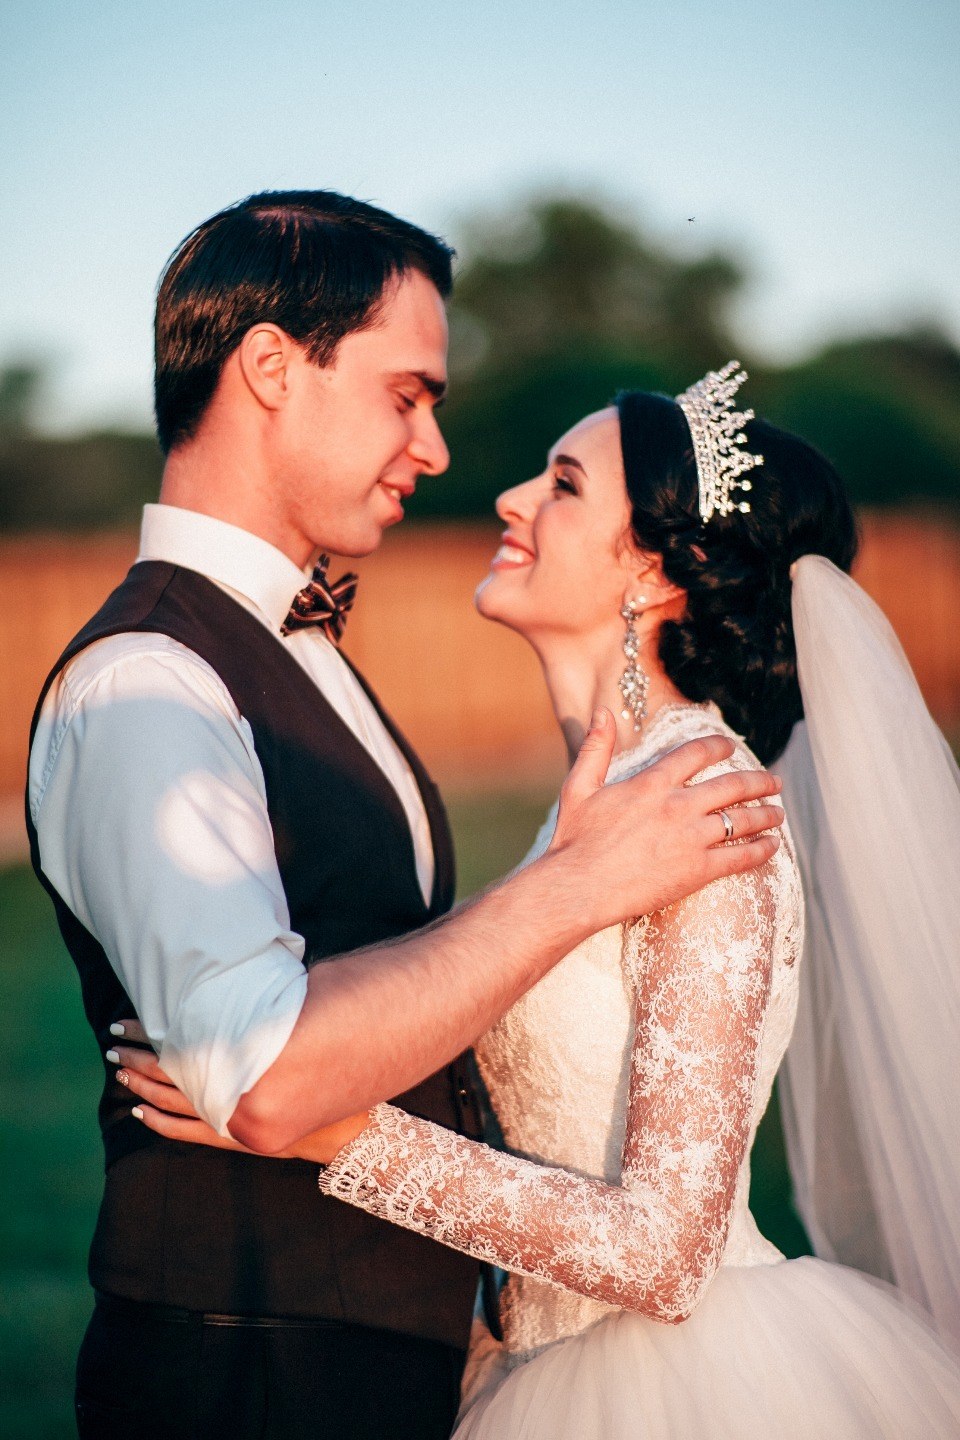 Как мы организовали бюджетную свадьбу своими руками: опыт невесты